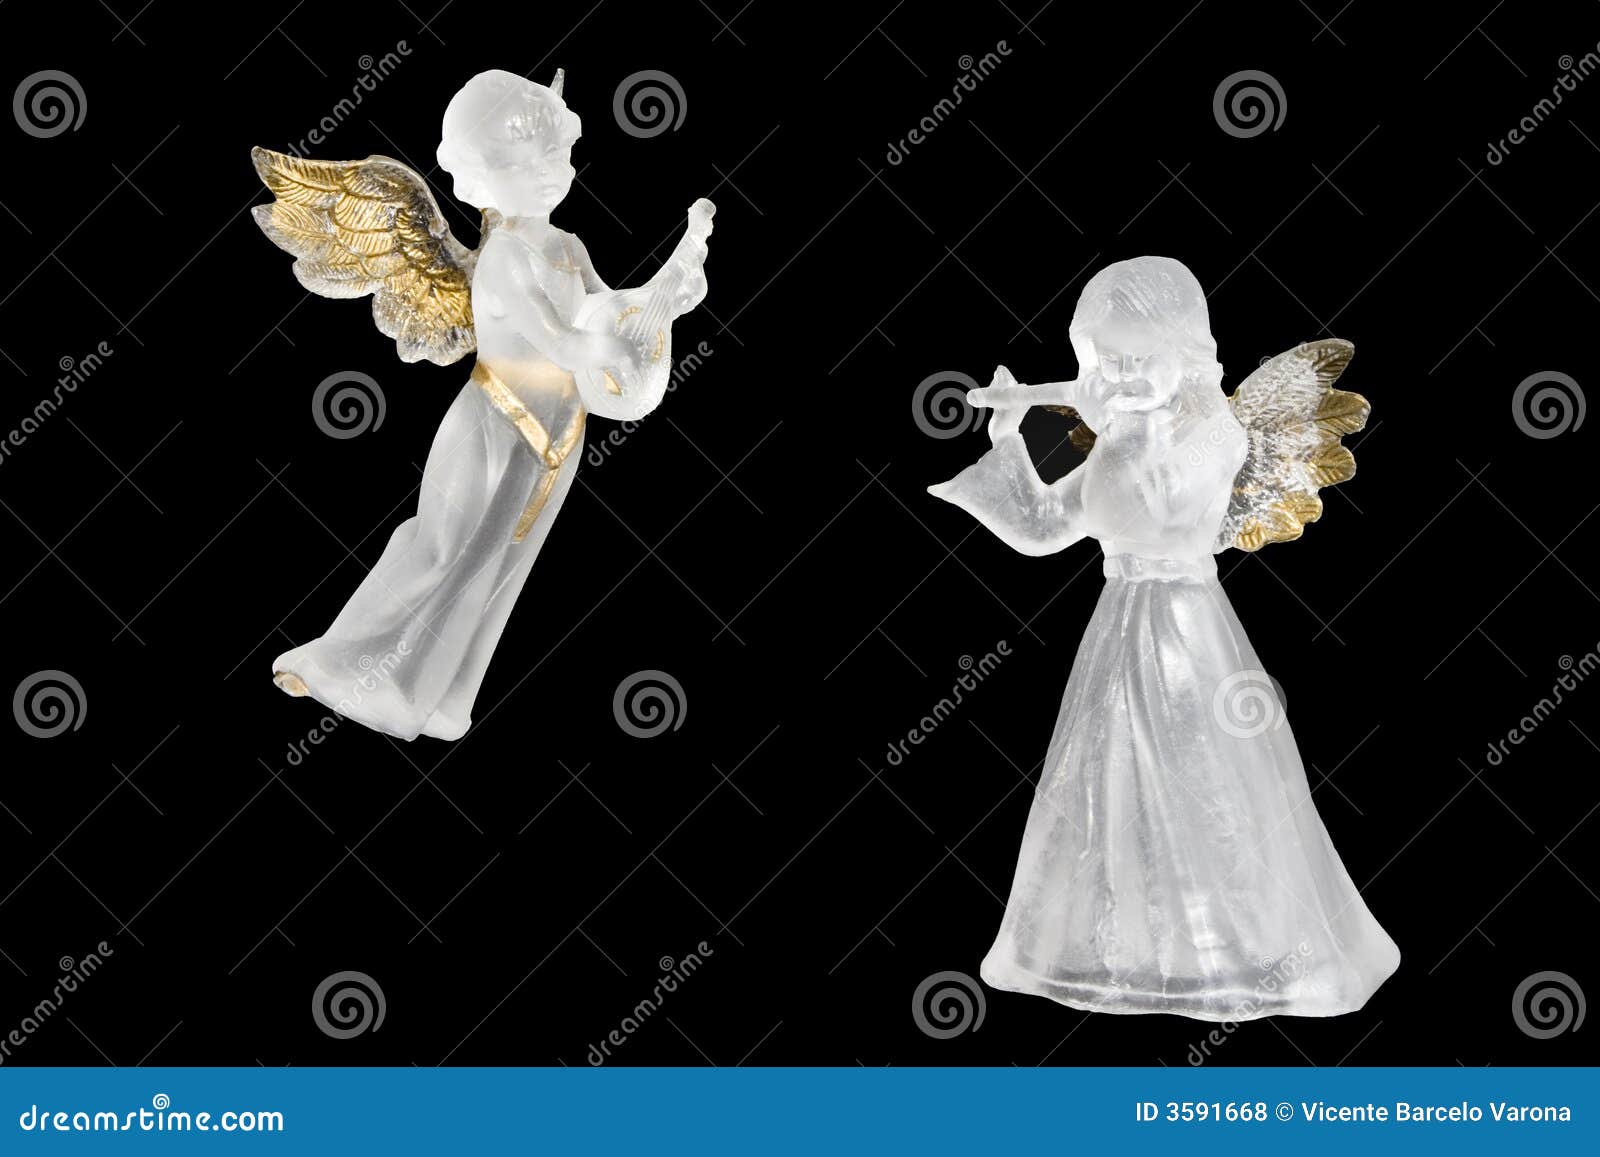 Foto Angeli Di Natale.Angeli Di Natale Fotografia Stock Immagine Di Ghiaccio 3591668